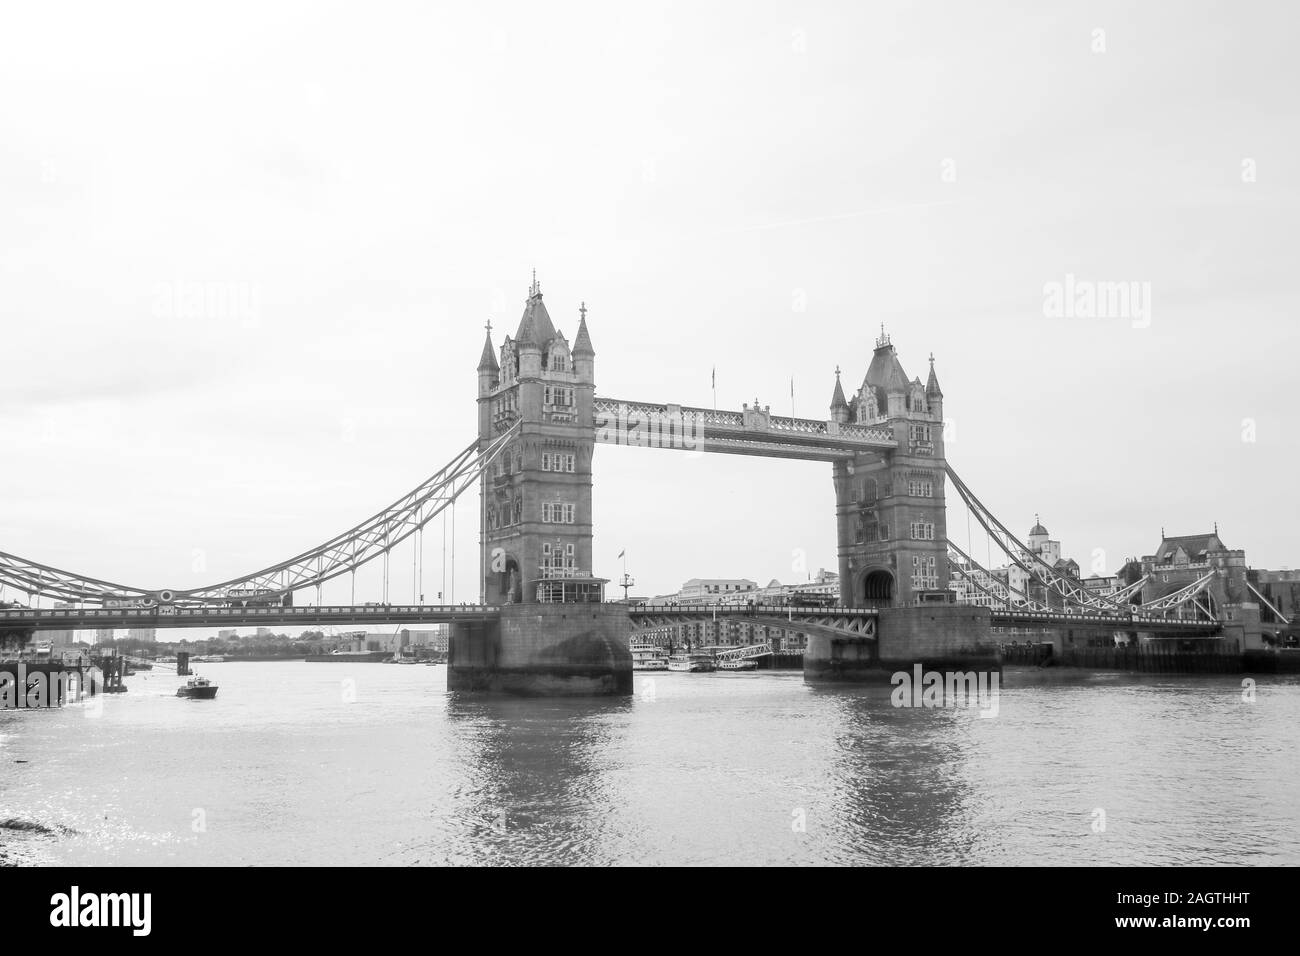 21 agosto 2019 - Il Tower Bridge di Londra, Regno Unito. Il Tower Bridge è probabilmente il più famoso ponte del mondo, stando in piedi sopra il fiume Thame Foto Stock